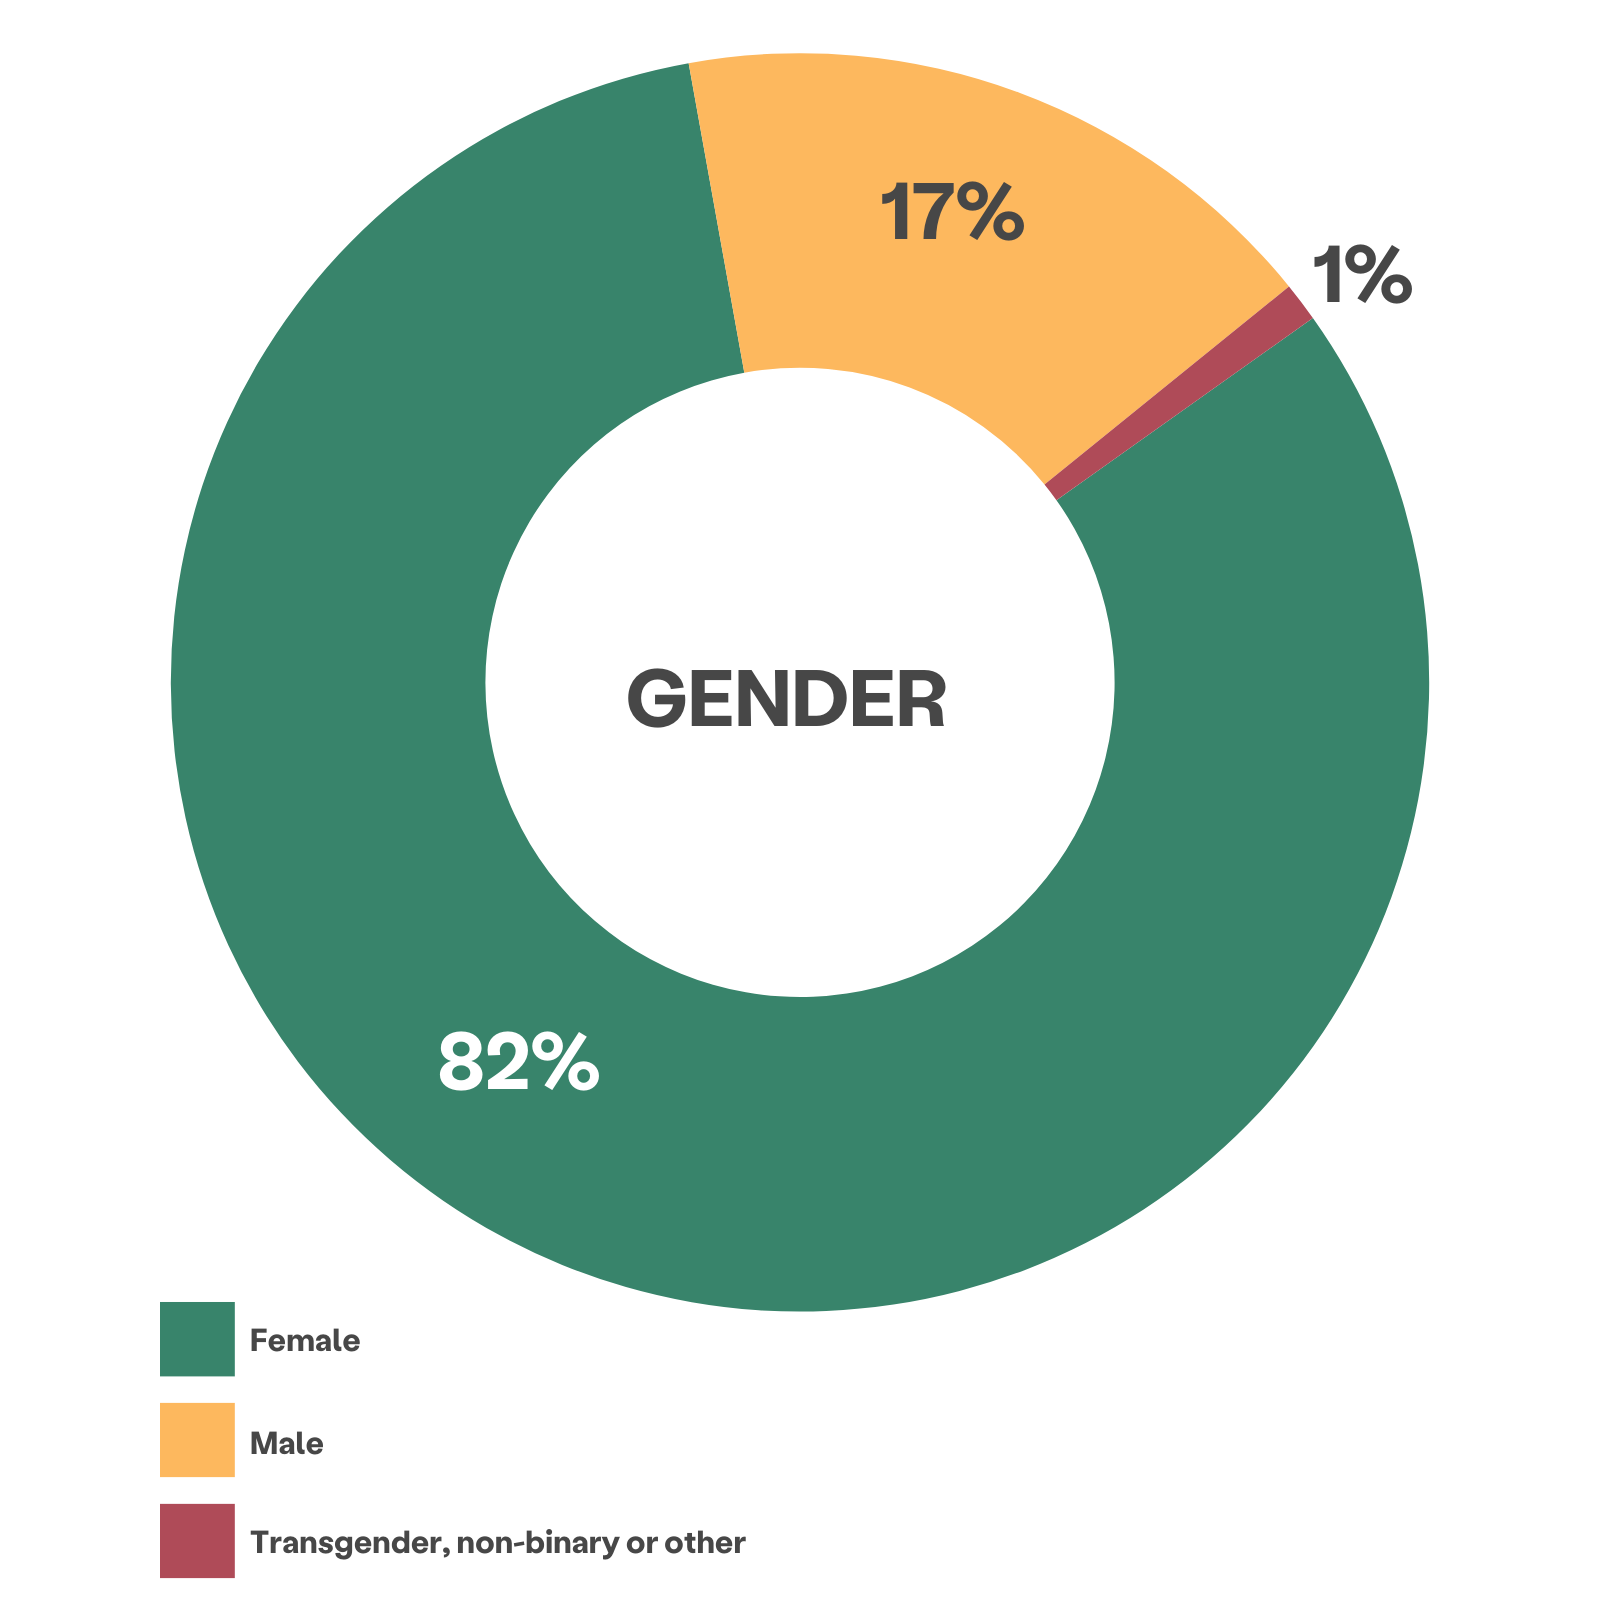 biểu đồ bánh xe nhiều màu hiển thị giới tính của khách hàng: 82% nữ, 17% nam, 1% chuyển giới, không nhị phân hoặc khác